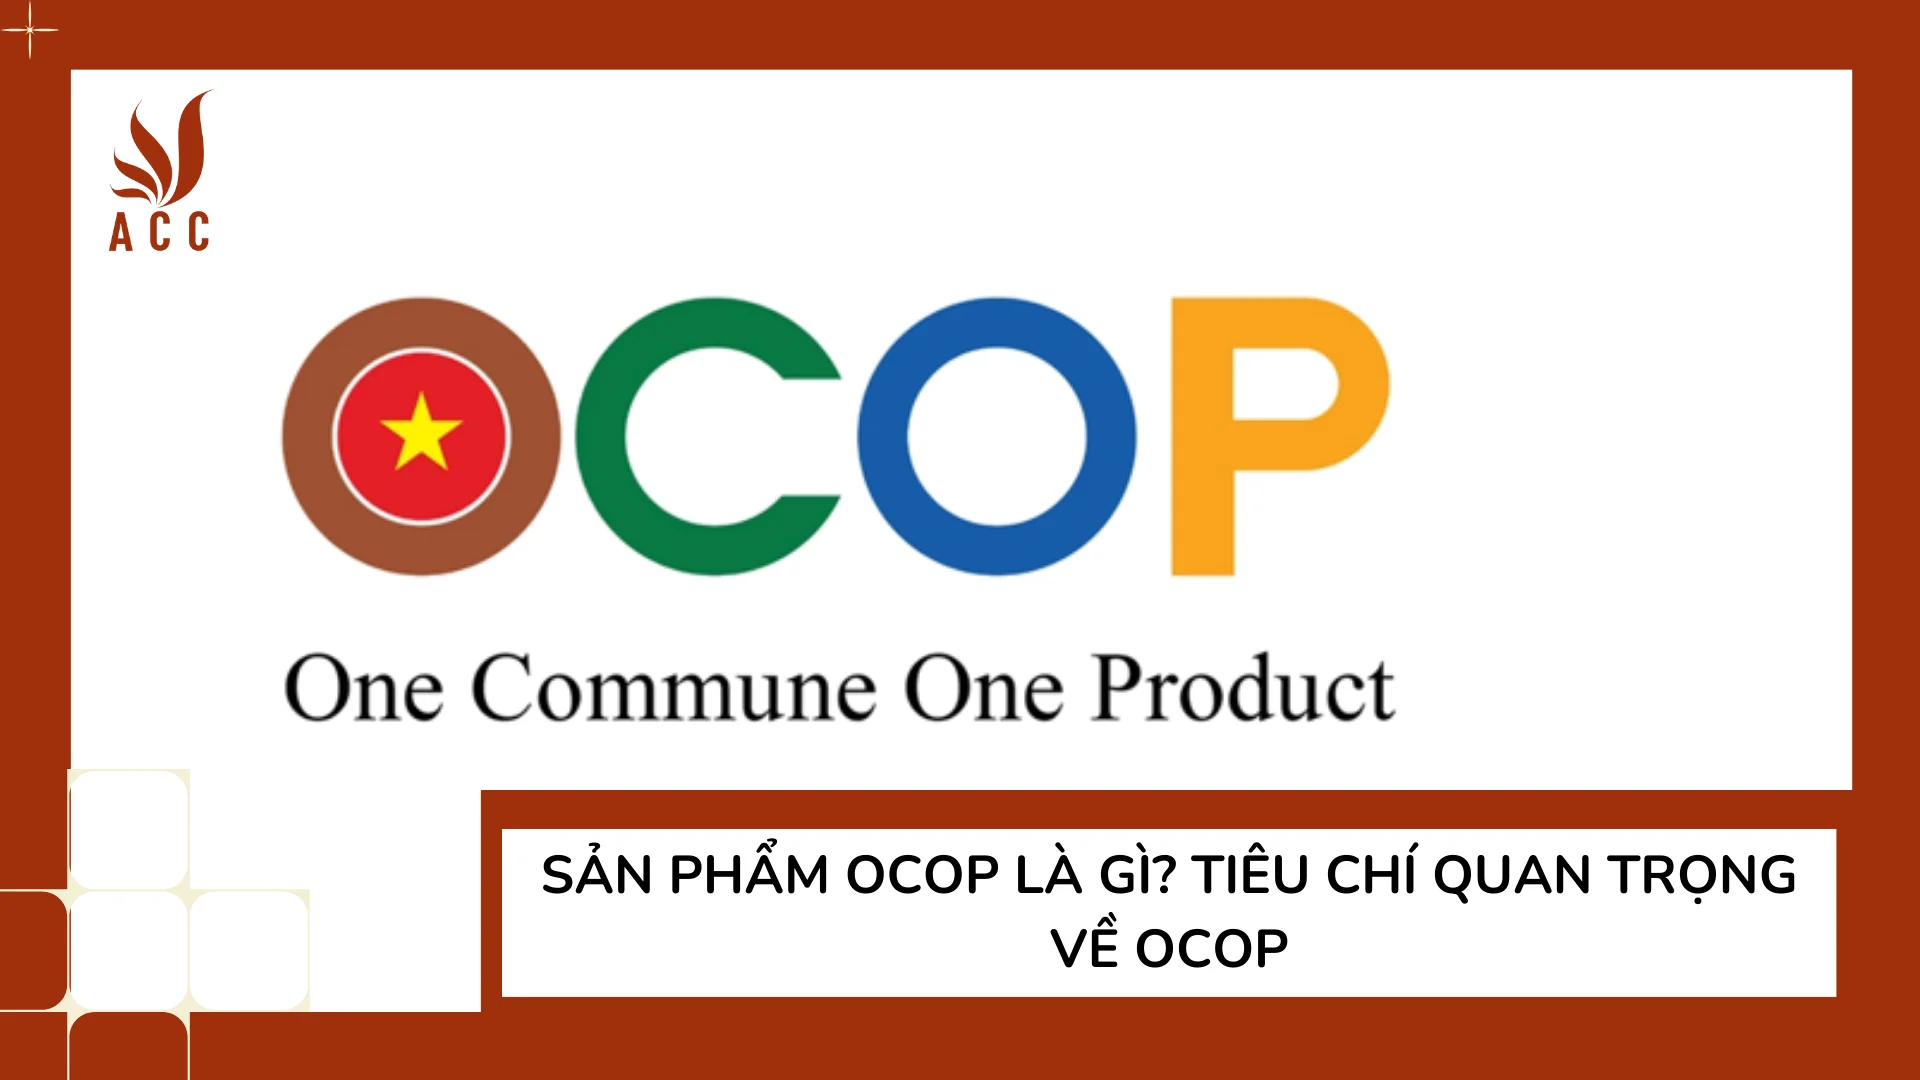 Sản phẩm OCOP là gì? Tiêu chí quan trọng về OCOP